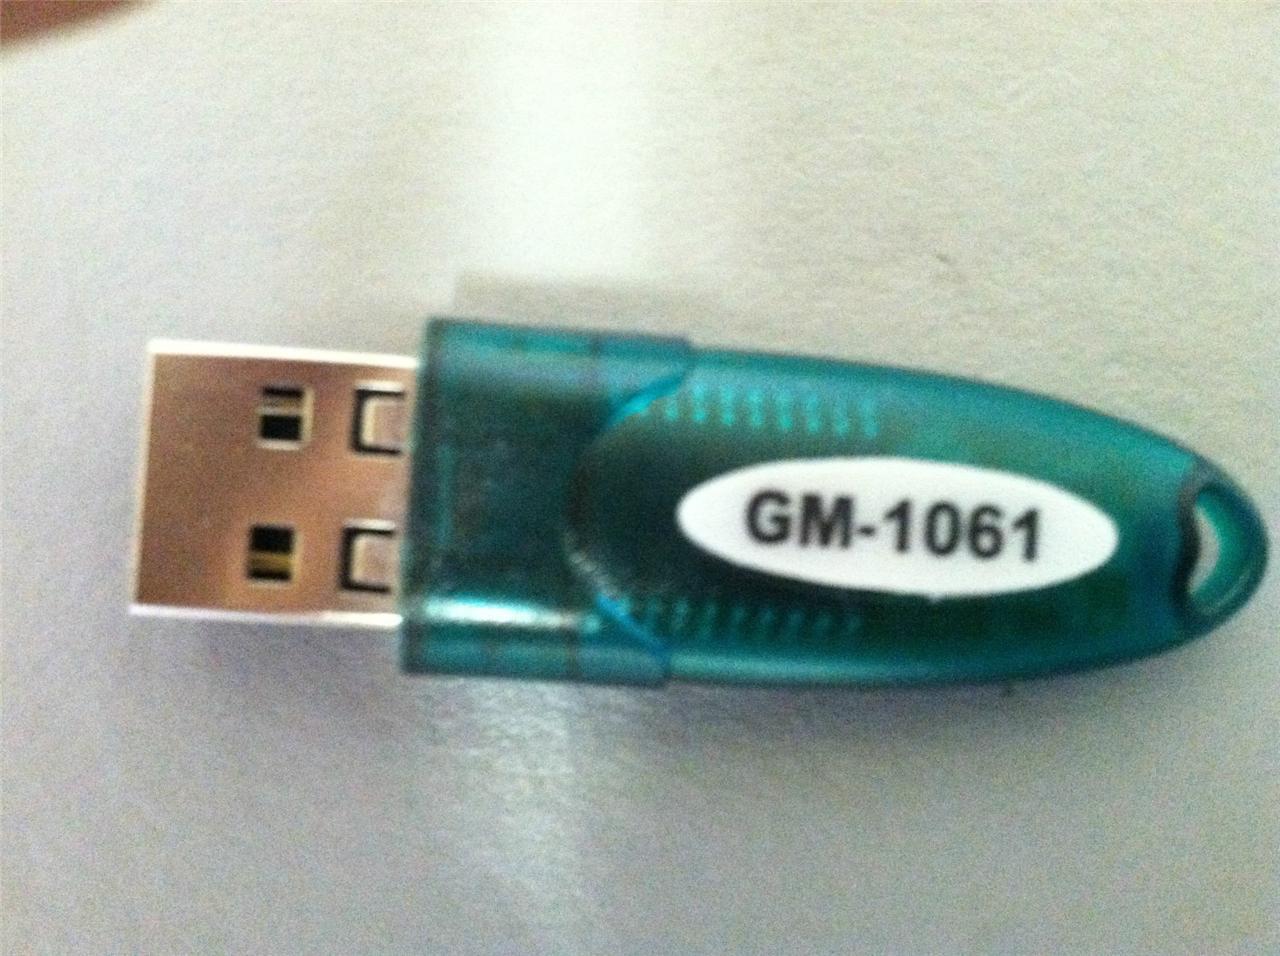 GM-1061